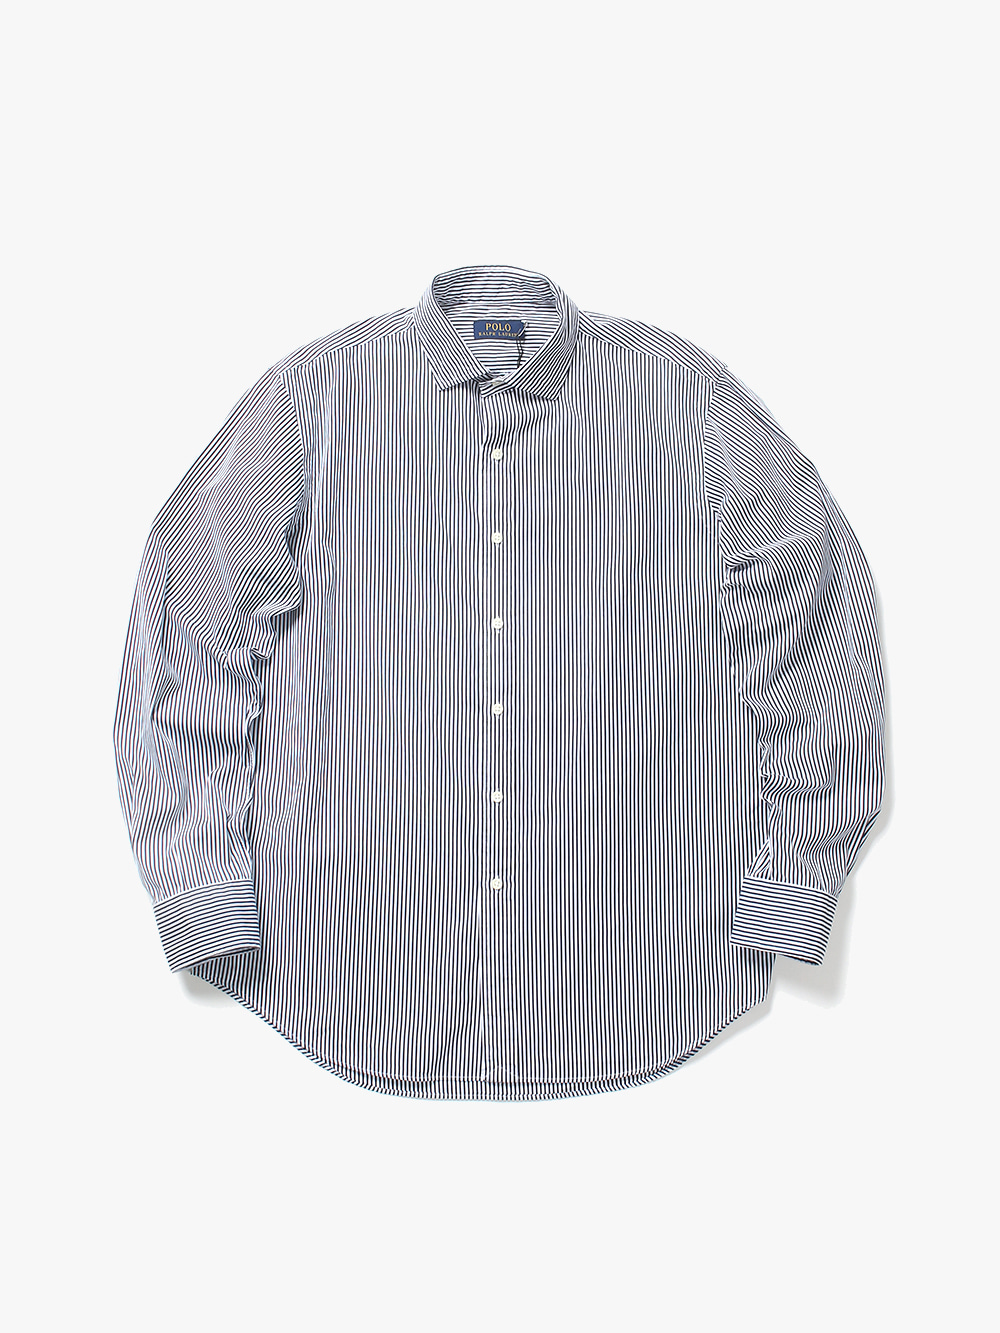 [ L ] Polo Ralph Lauren Shirt (6102)